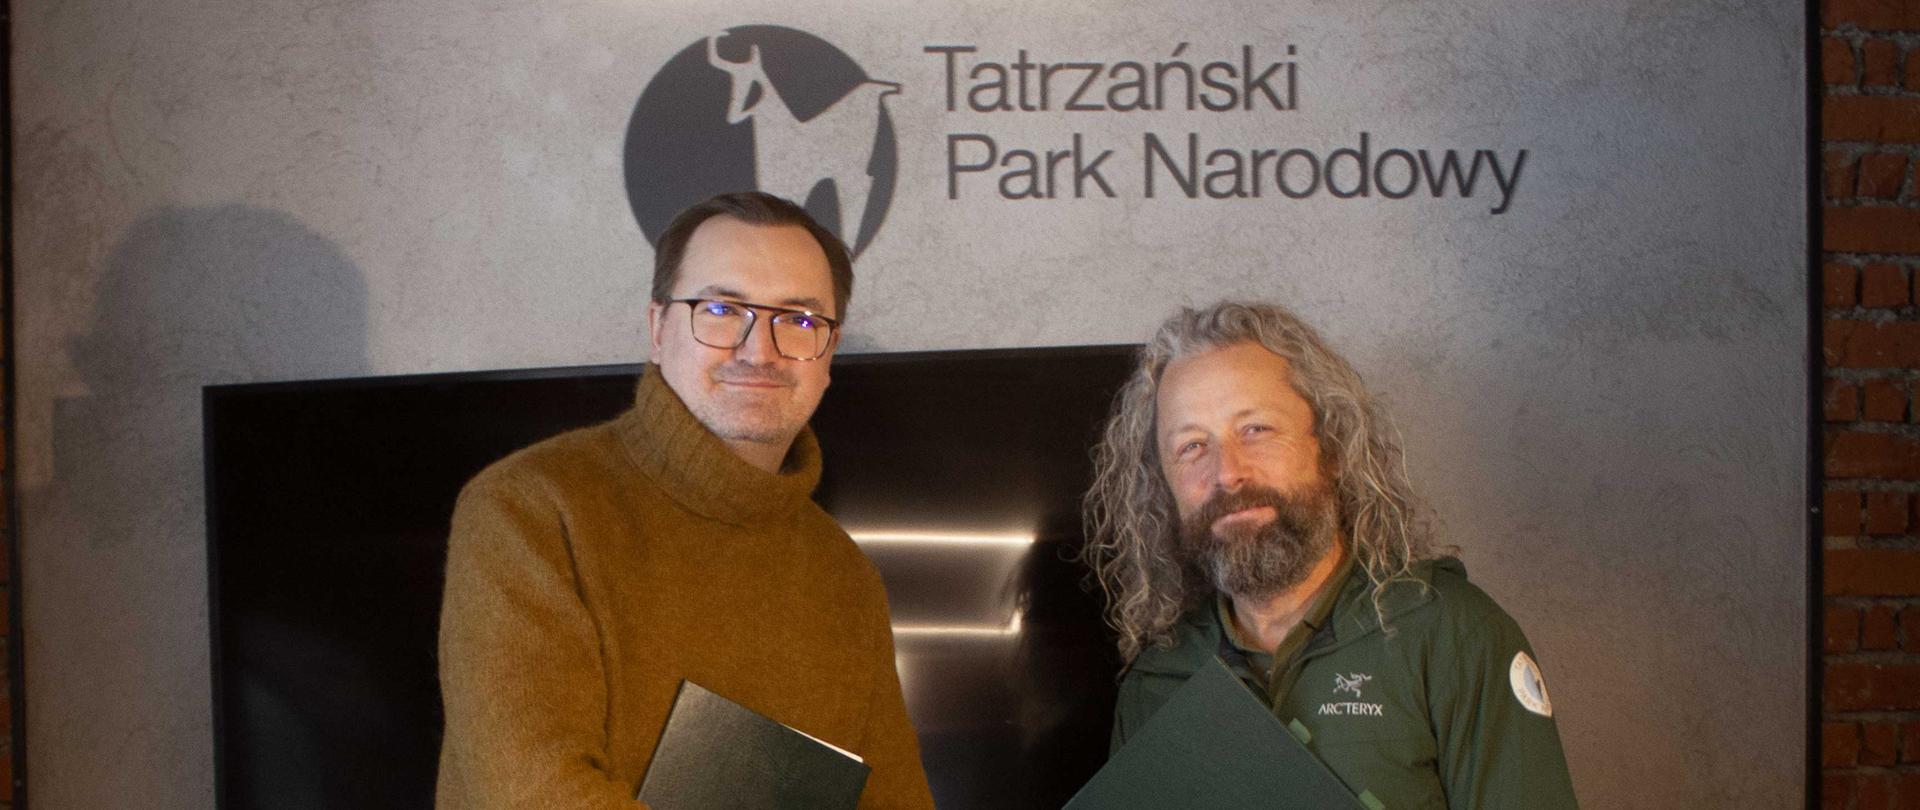 Sławomir Mazurek, wiceprezes NFOŚiGW i Szymon Ziobrowski, dyrektor Tatrzańskiego Parku Narodowego podpisują umowę o dofinansowanie.